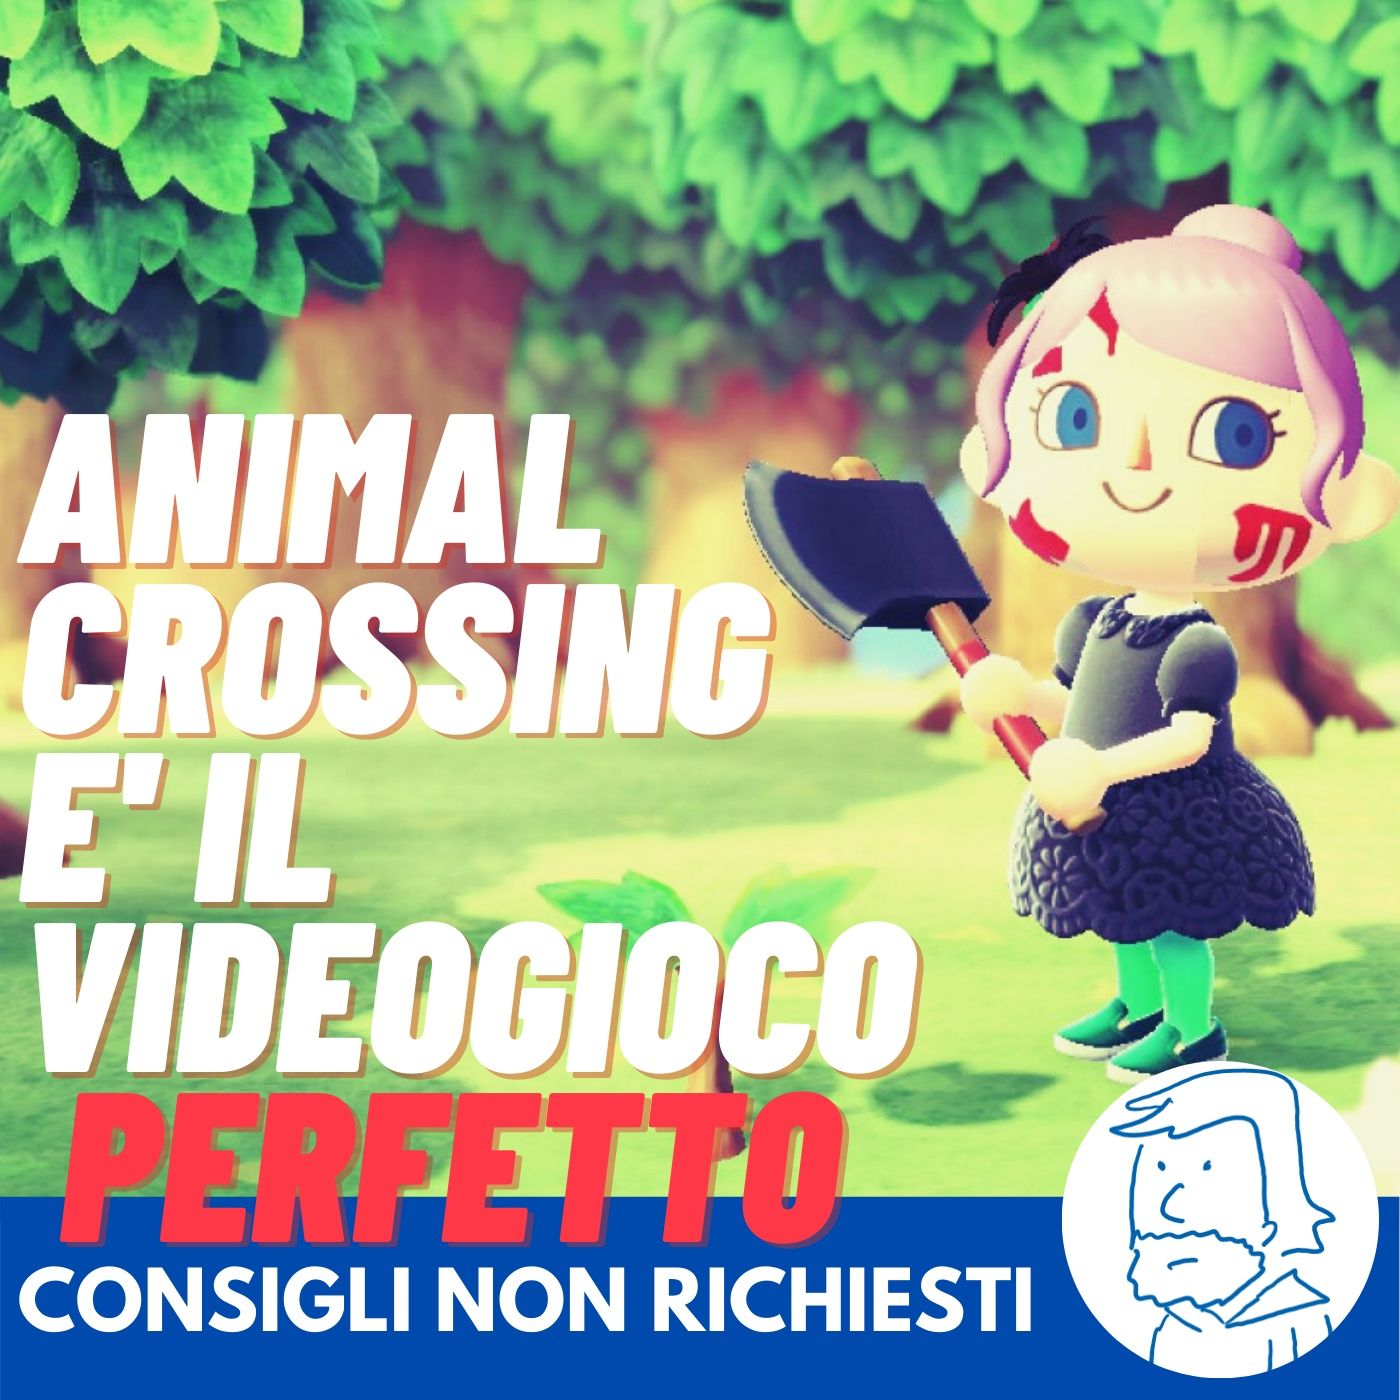 Animal Crossing è il videogioco perfetto [ma non per i motivi che pensate]